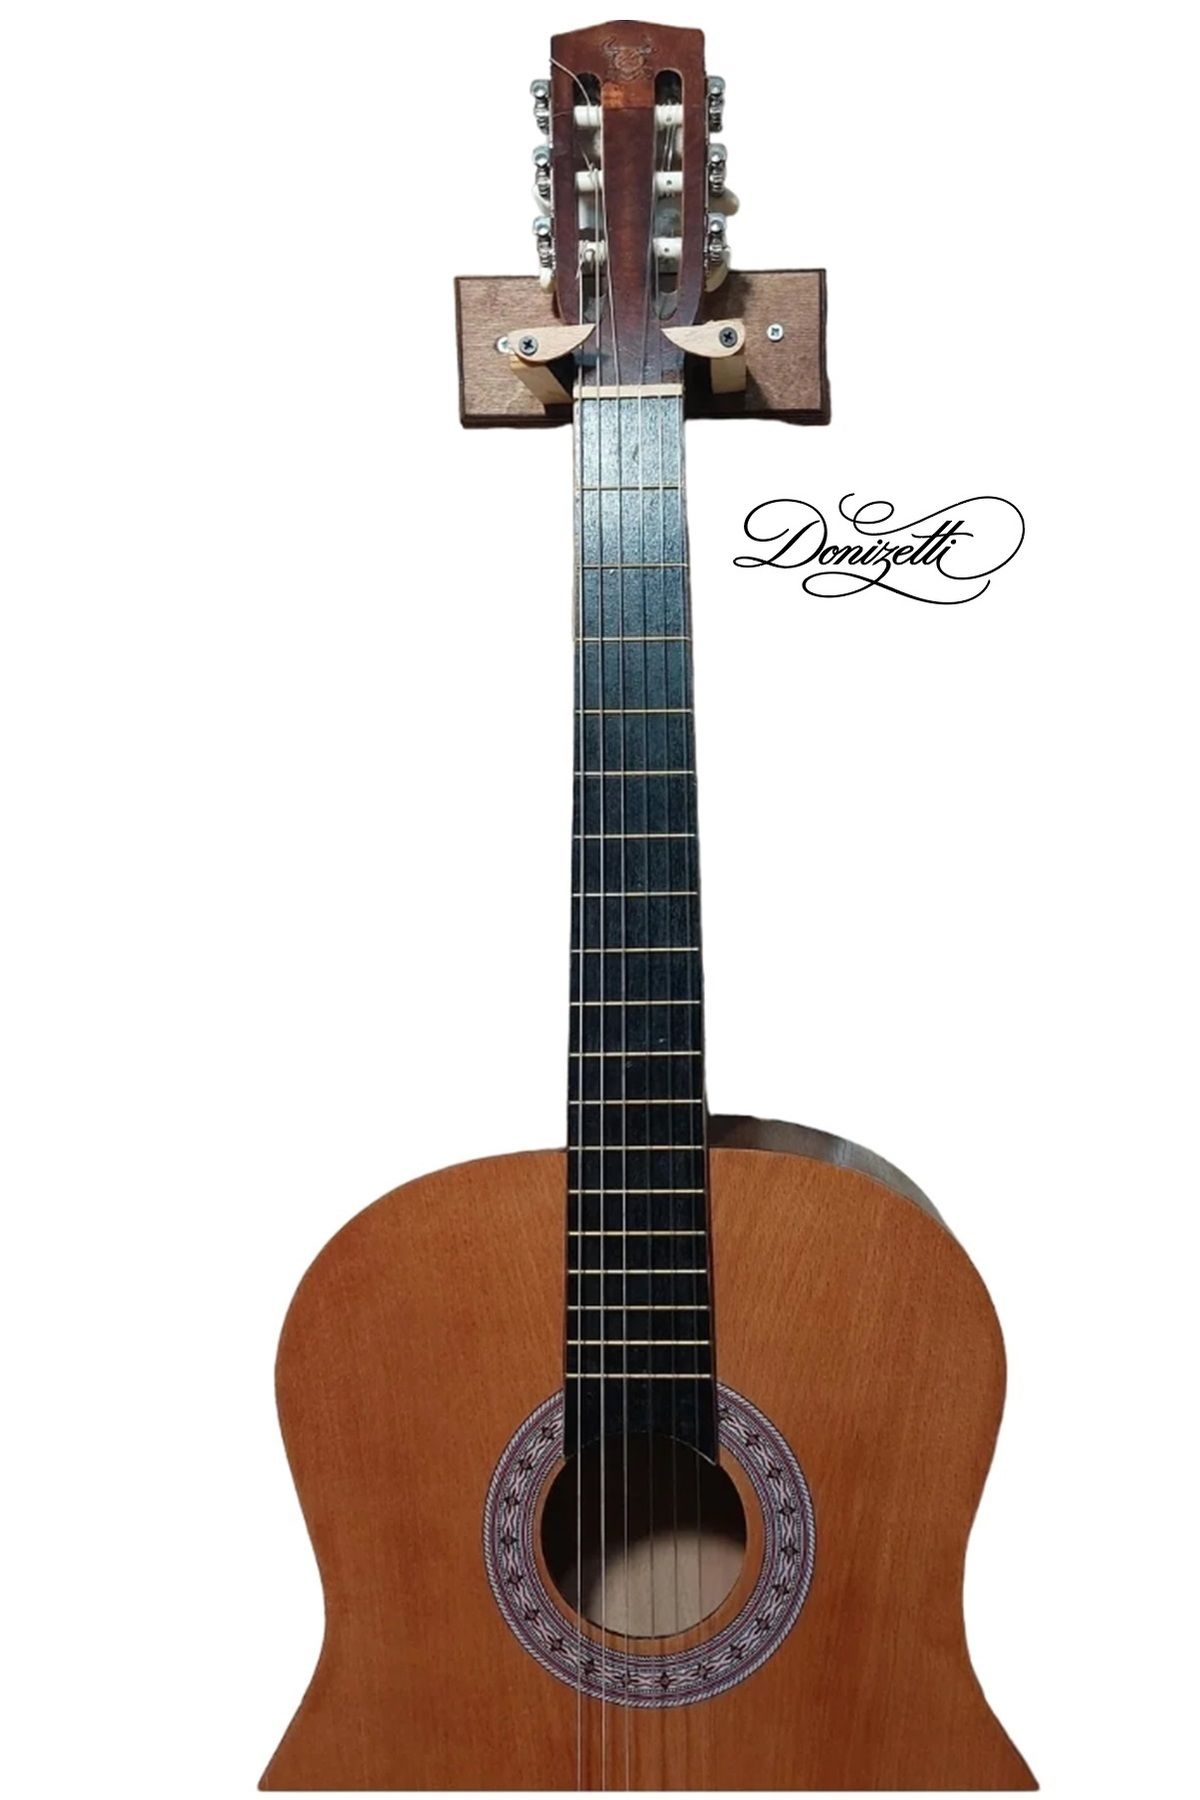 Donizetti Klasik Akustik Elektro Gitar Duvar Askı Standı Aparatı Askısı - Dekoratif Ahsap Tasarım